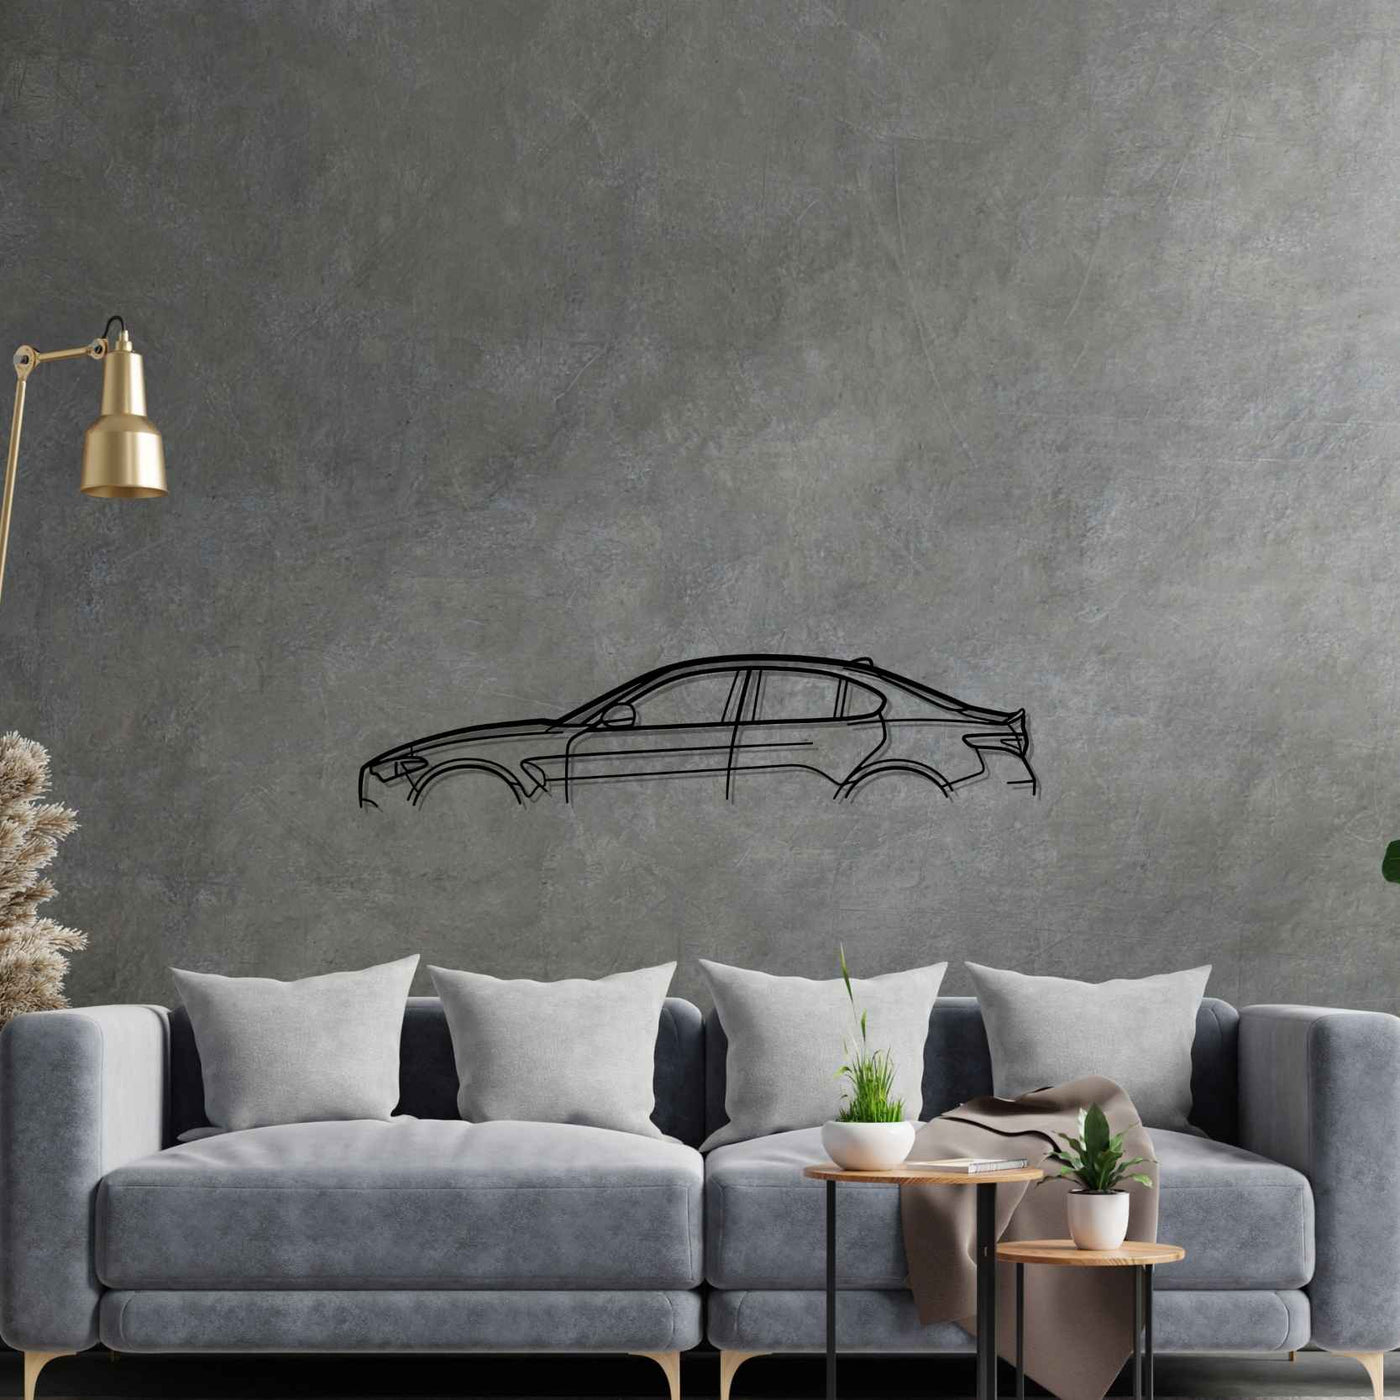 Giulia 2019 Classic Silhouette Metal Wall Art